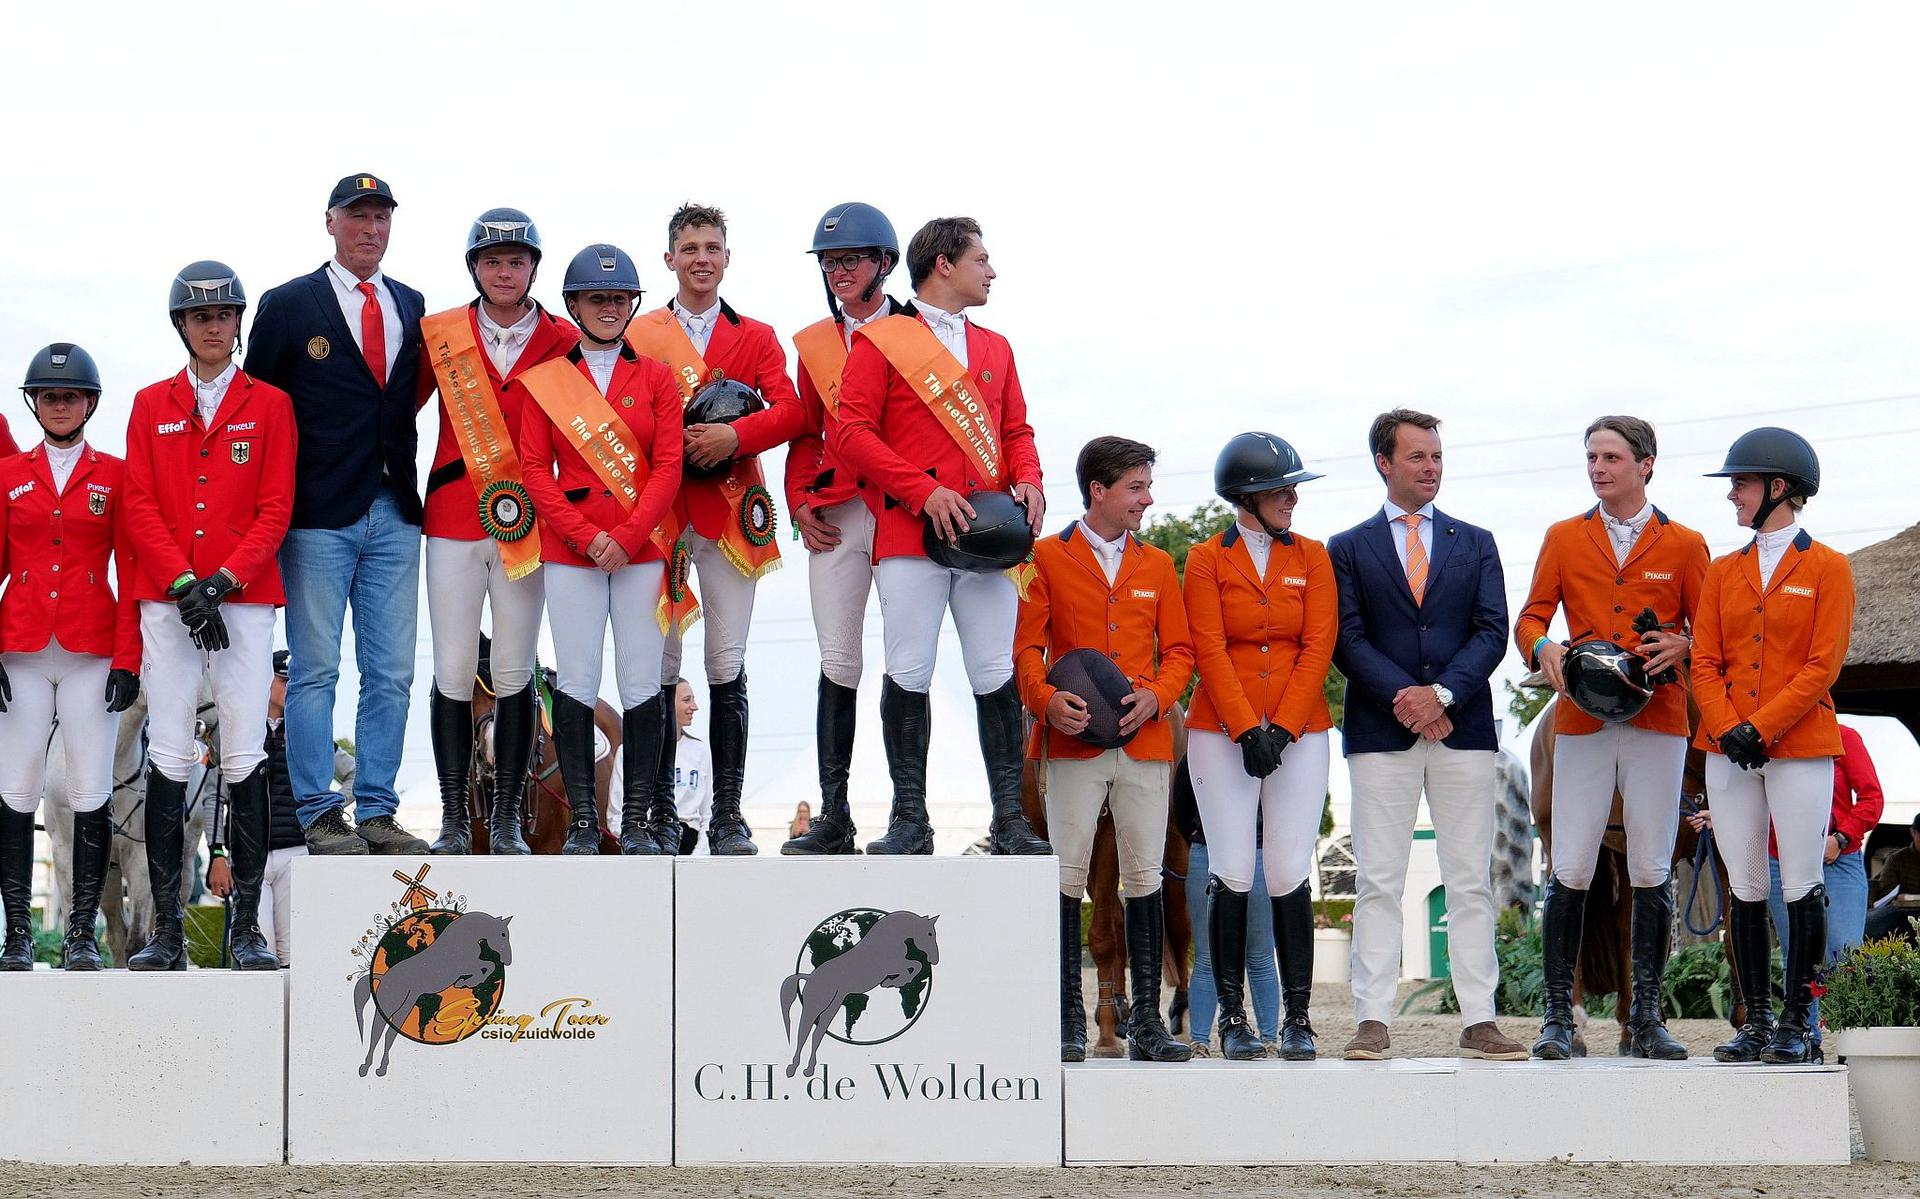 La squadra equestre olandese per la competizione nazionale juniores senior ha ottenuto il terzo posto sul podio dopo Belgio e Germania